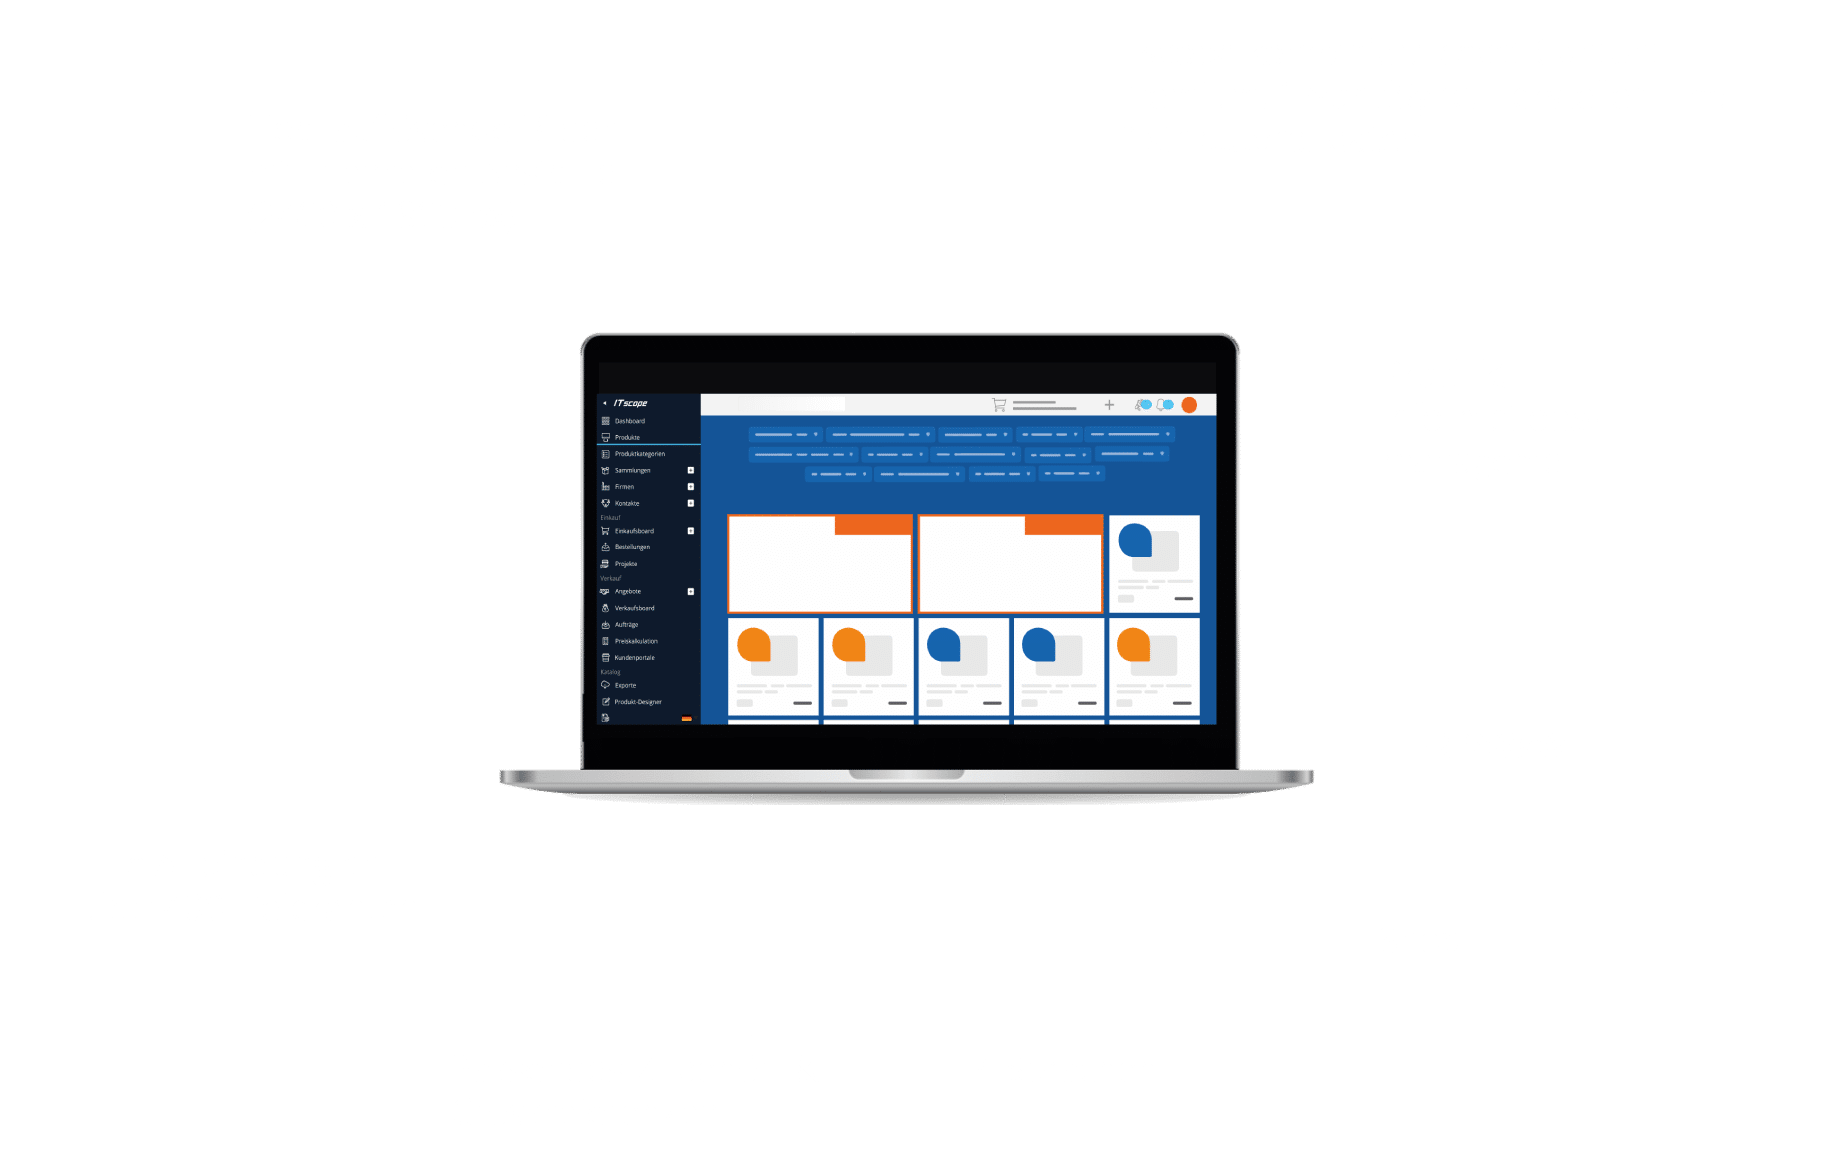 Notebook mit ITscope-Plattform und ihren Vorteilen: ITscope kombiniert Icecat Content Premium, 1WorldSync, Hersteller- und Distributorendaten, Hochauflösende Bilder mit mehreren Ansichten (2400 x 1800 px), Über 800.000 Produkte mit Content, Eine Anbindung an über 400 Lieferanten, Passendes Zubehör- & Crossreferenzen, 4 Sprachen, Shop, ERP7WaWi, Produktinformationsmanagement